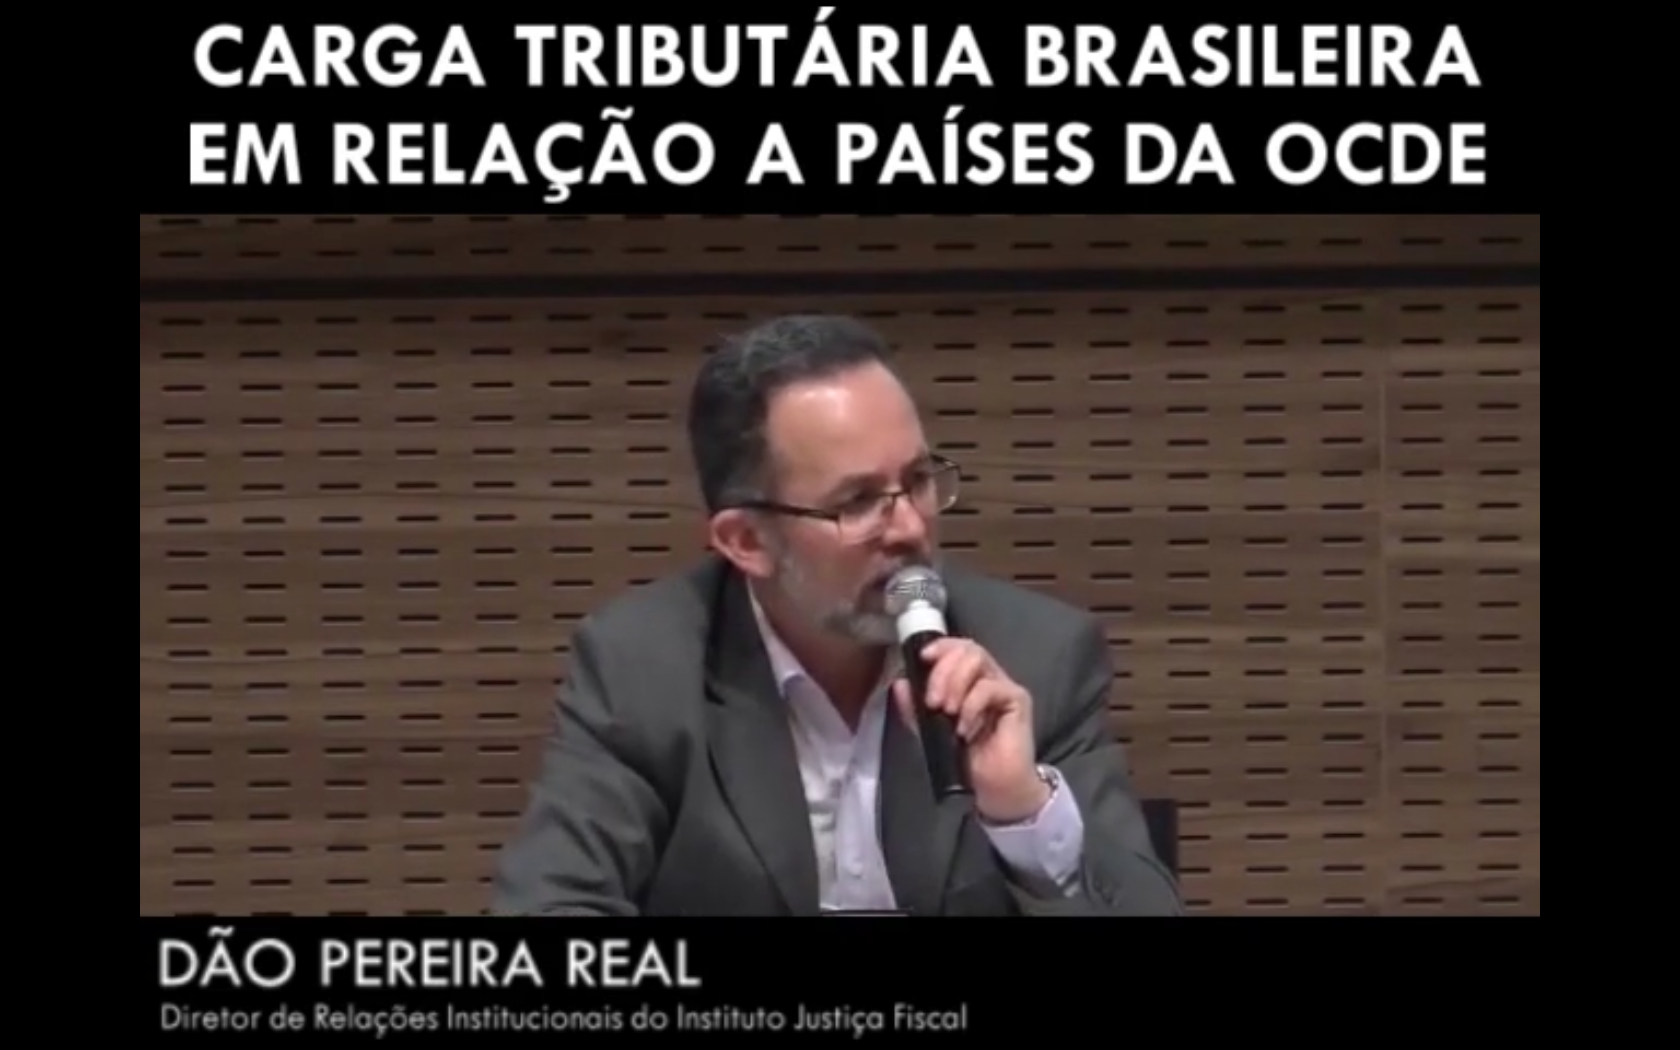 Carga tributária brasileira em relação a países OCDE - Dão Pereira Real